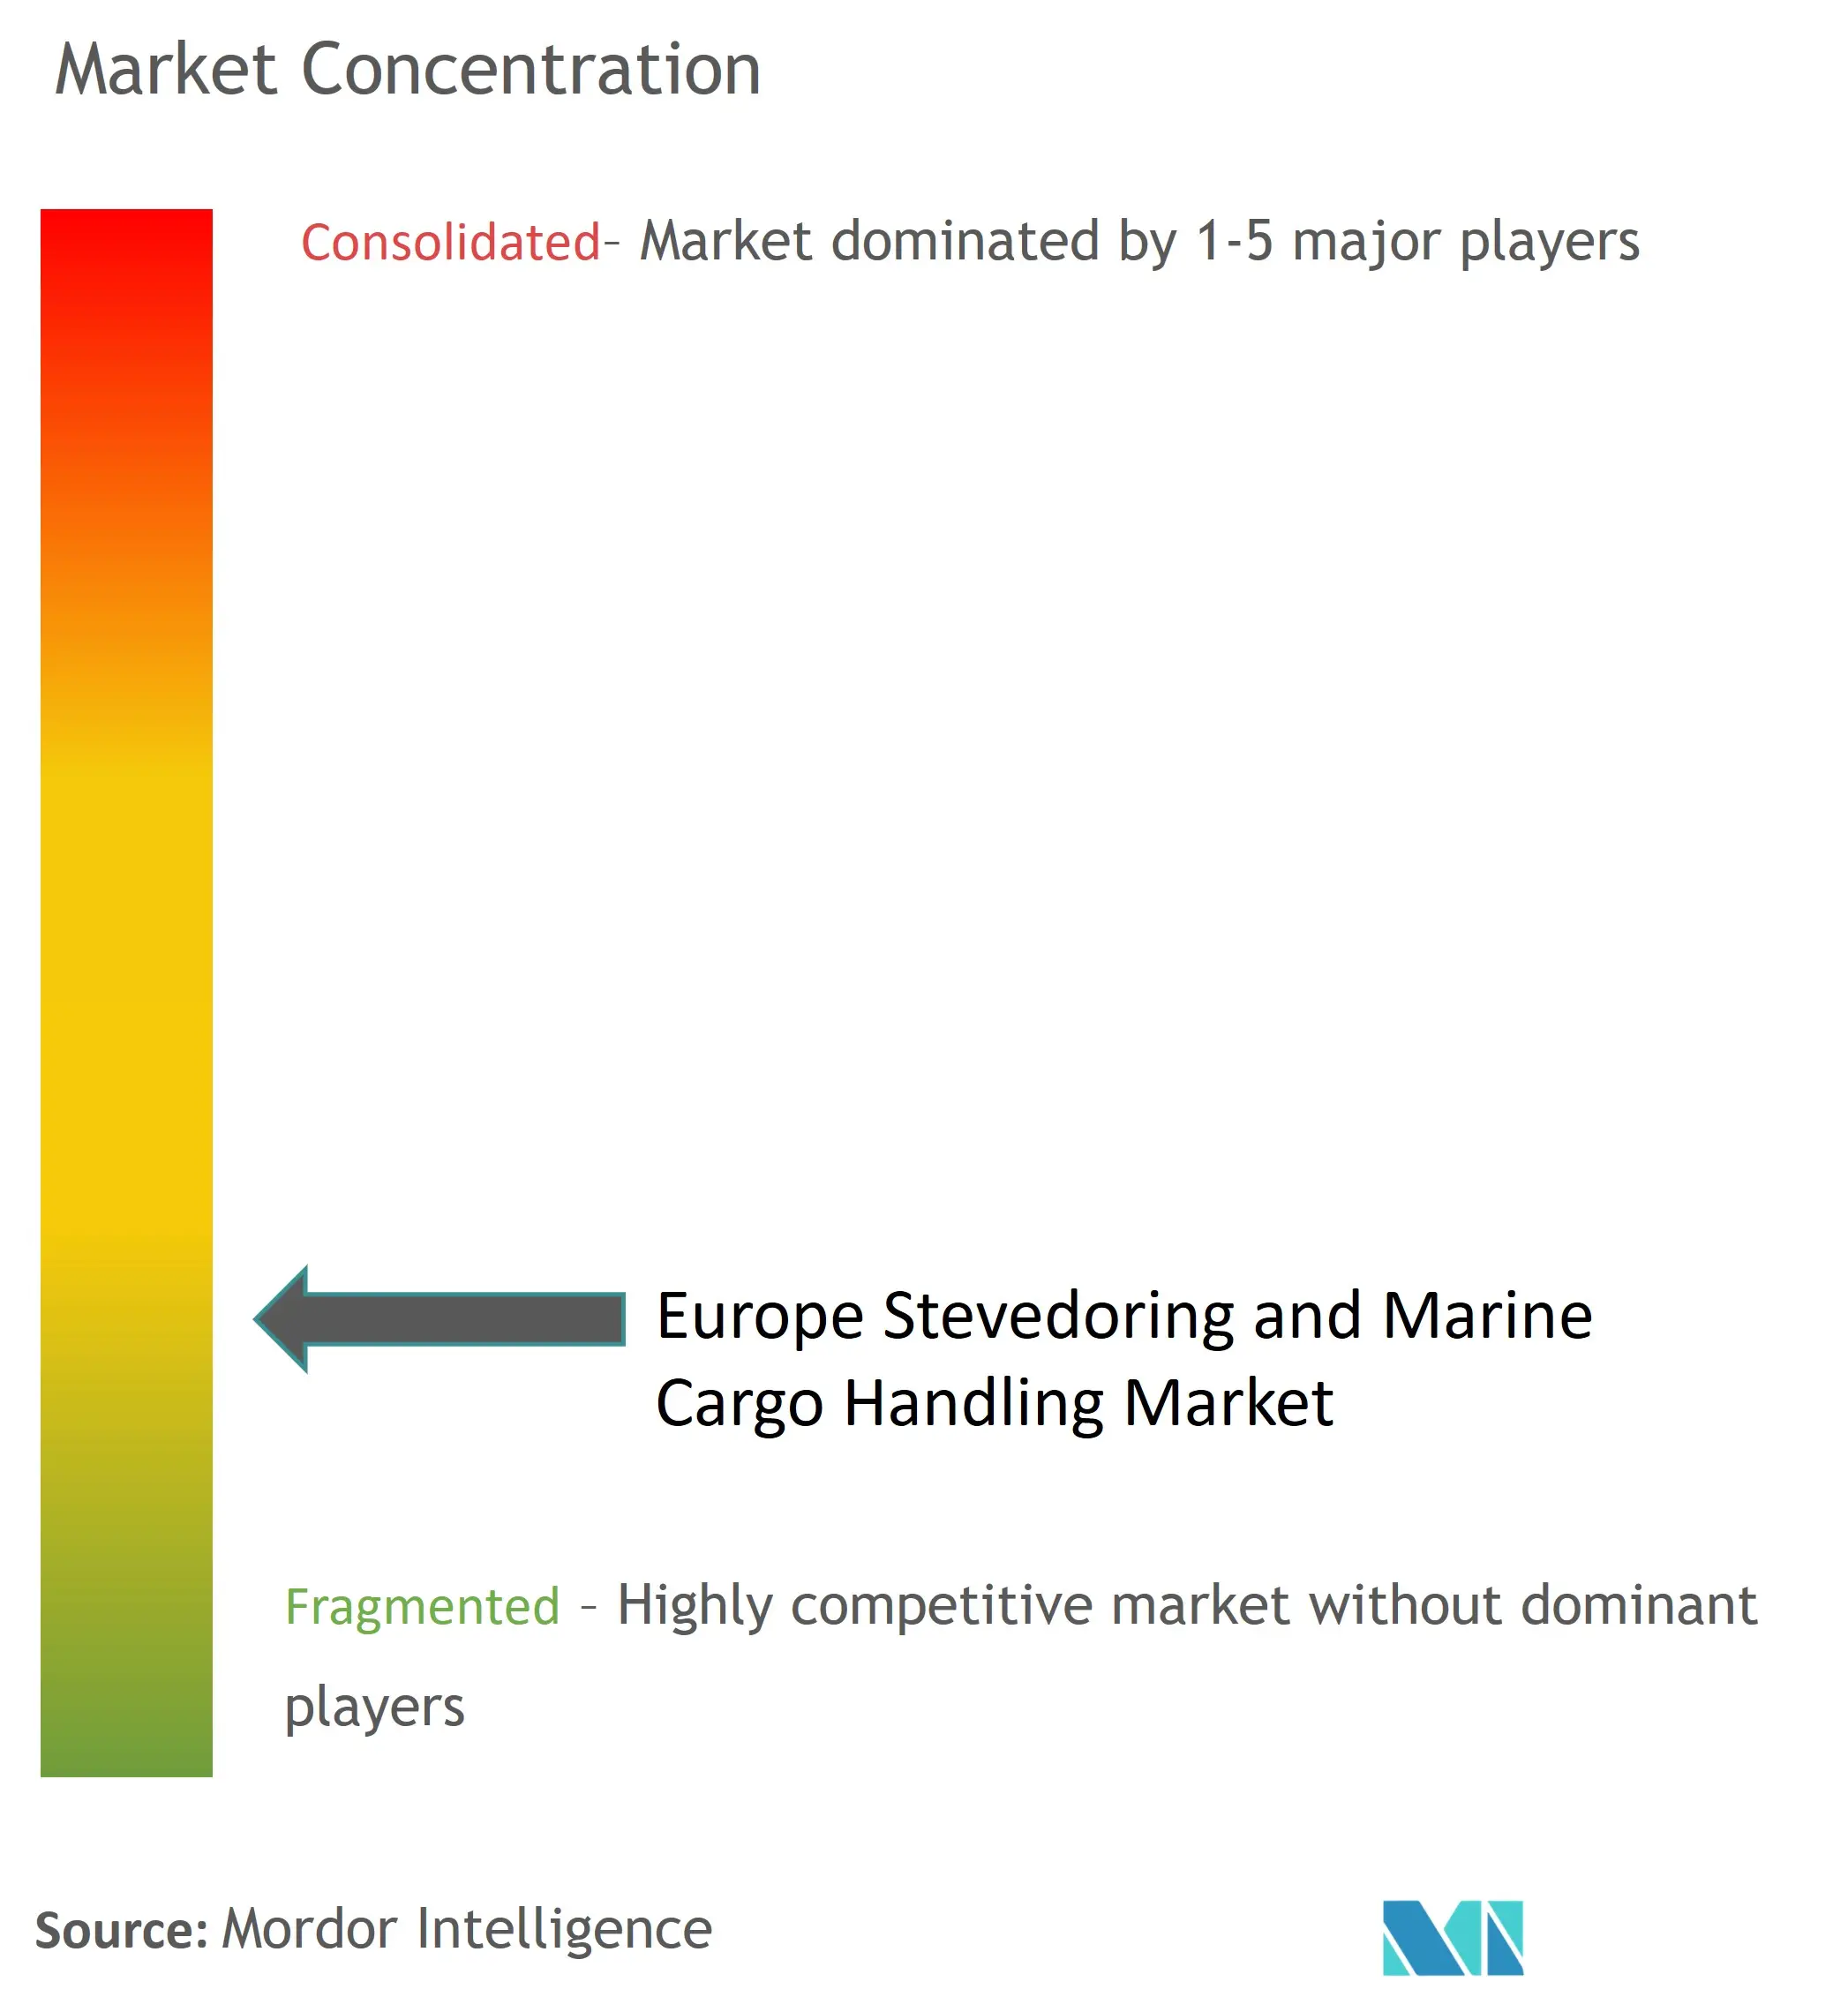 Europe Stevedoring & Marine Cargo Handling Market Concentration